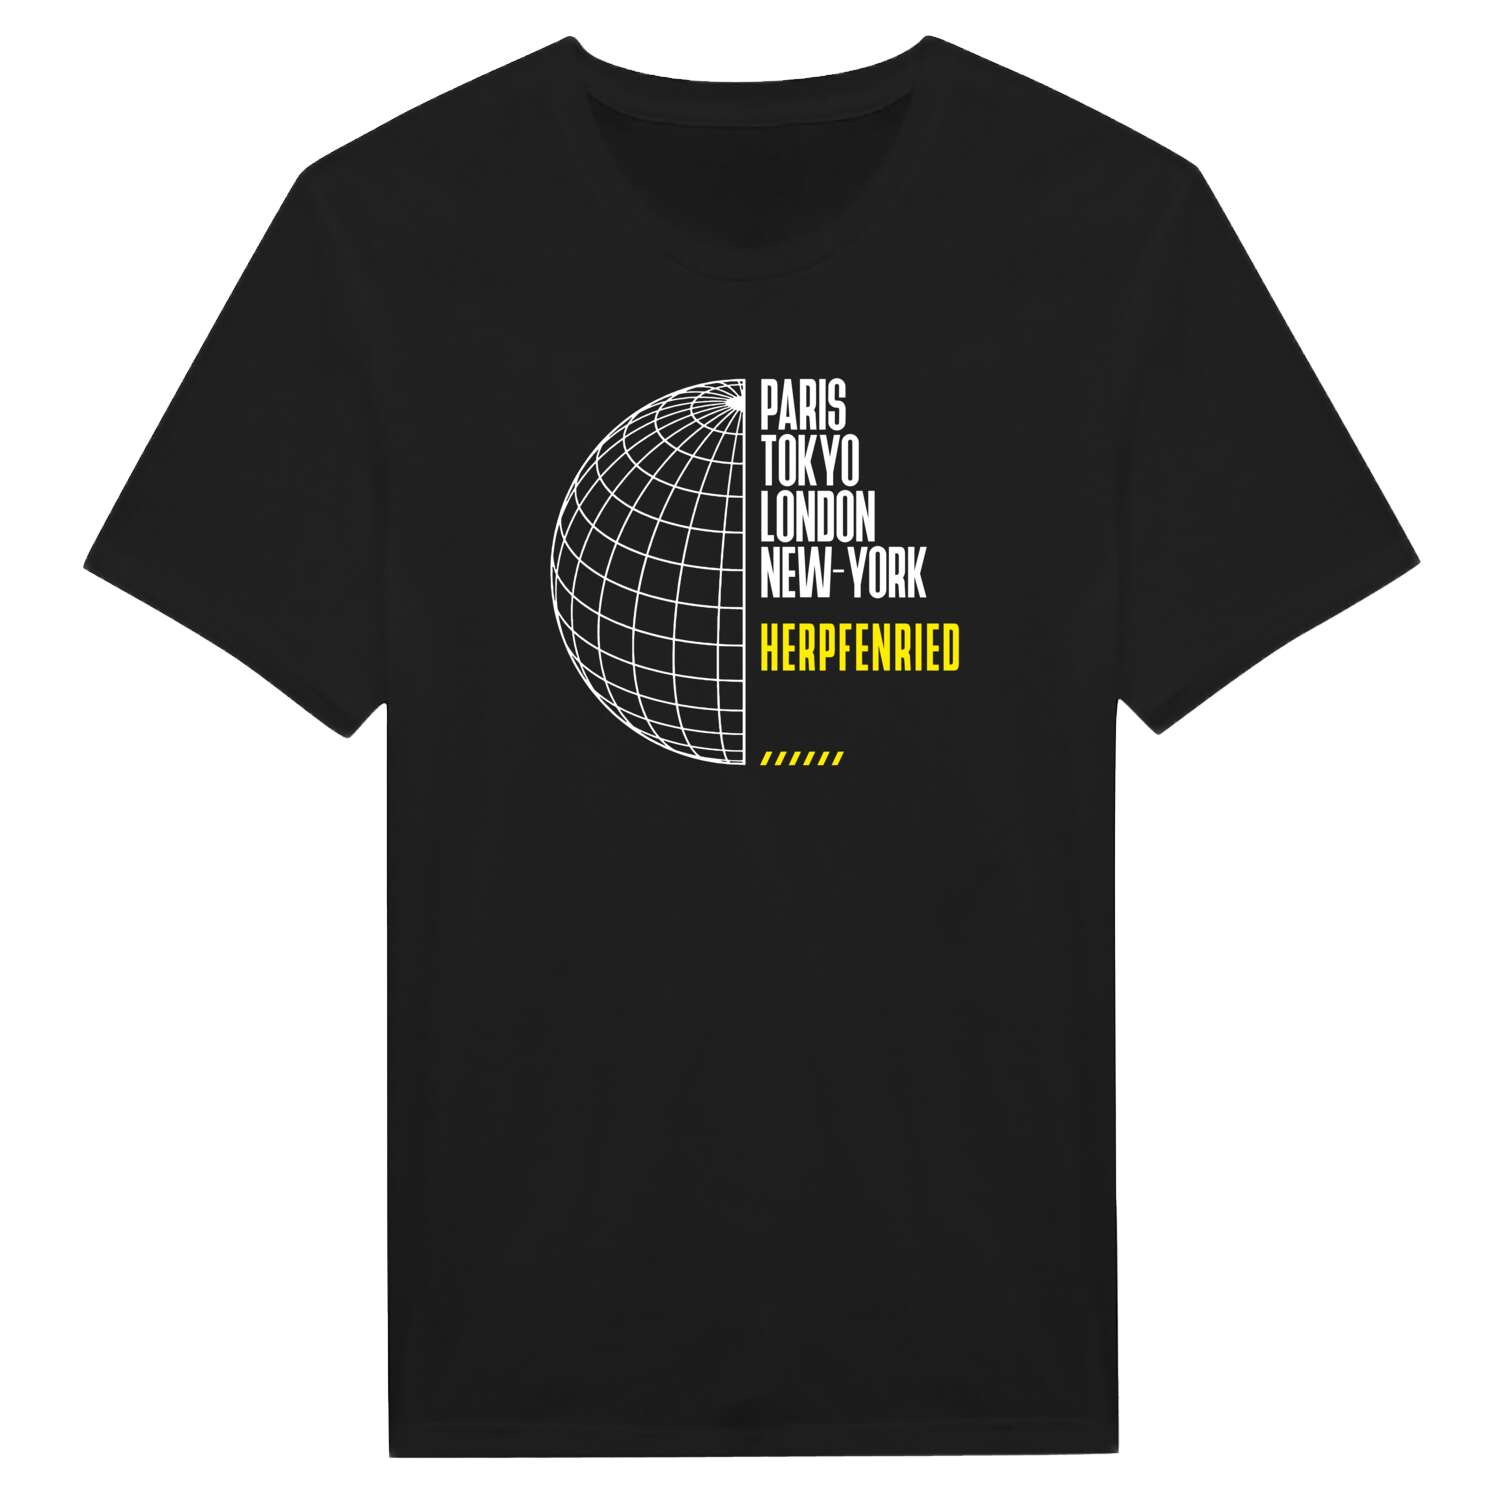 Herpfenried T-Shirt »Paris Tokyo London«